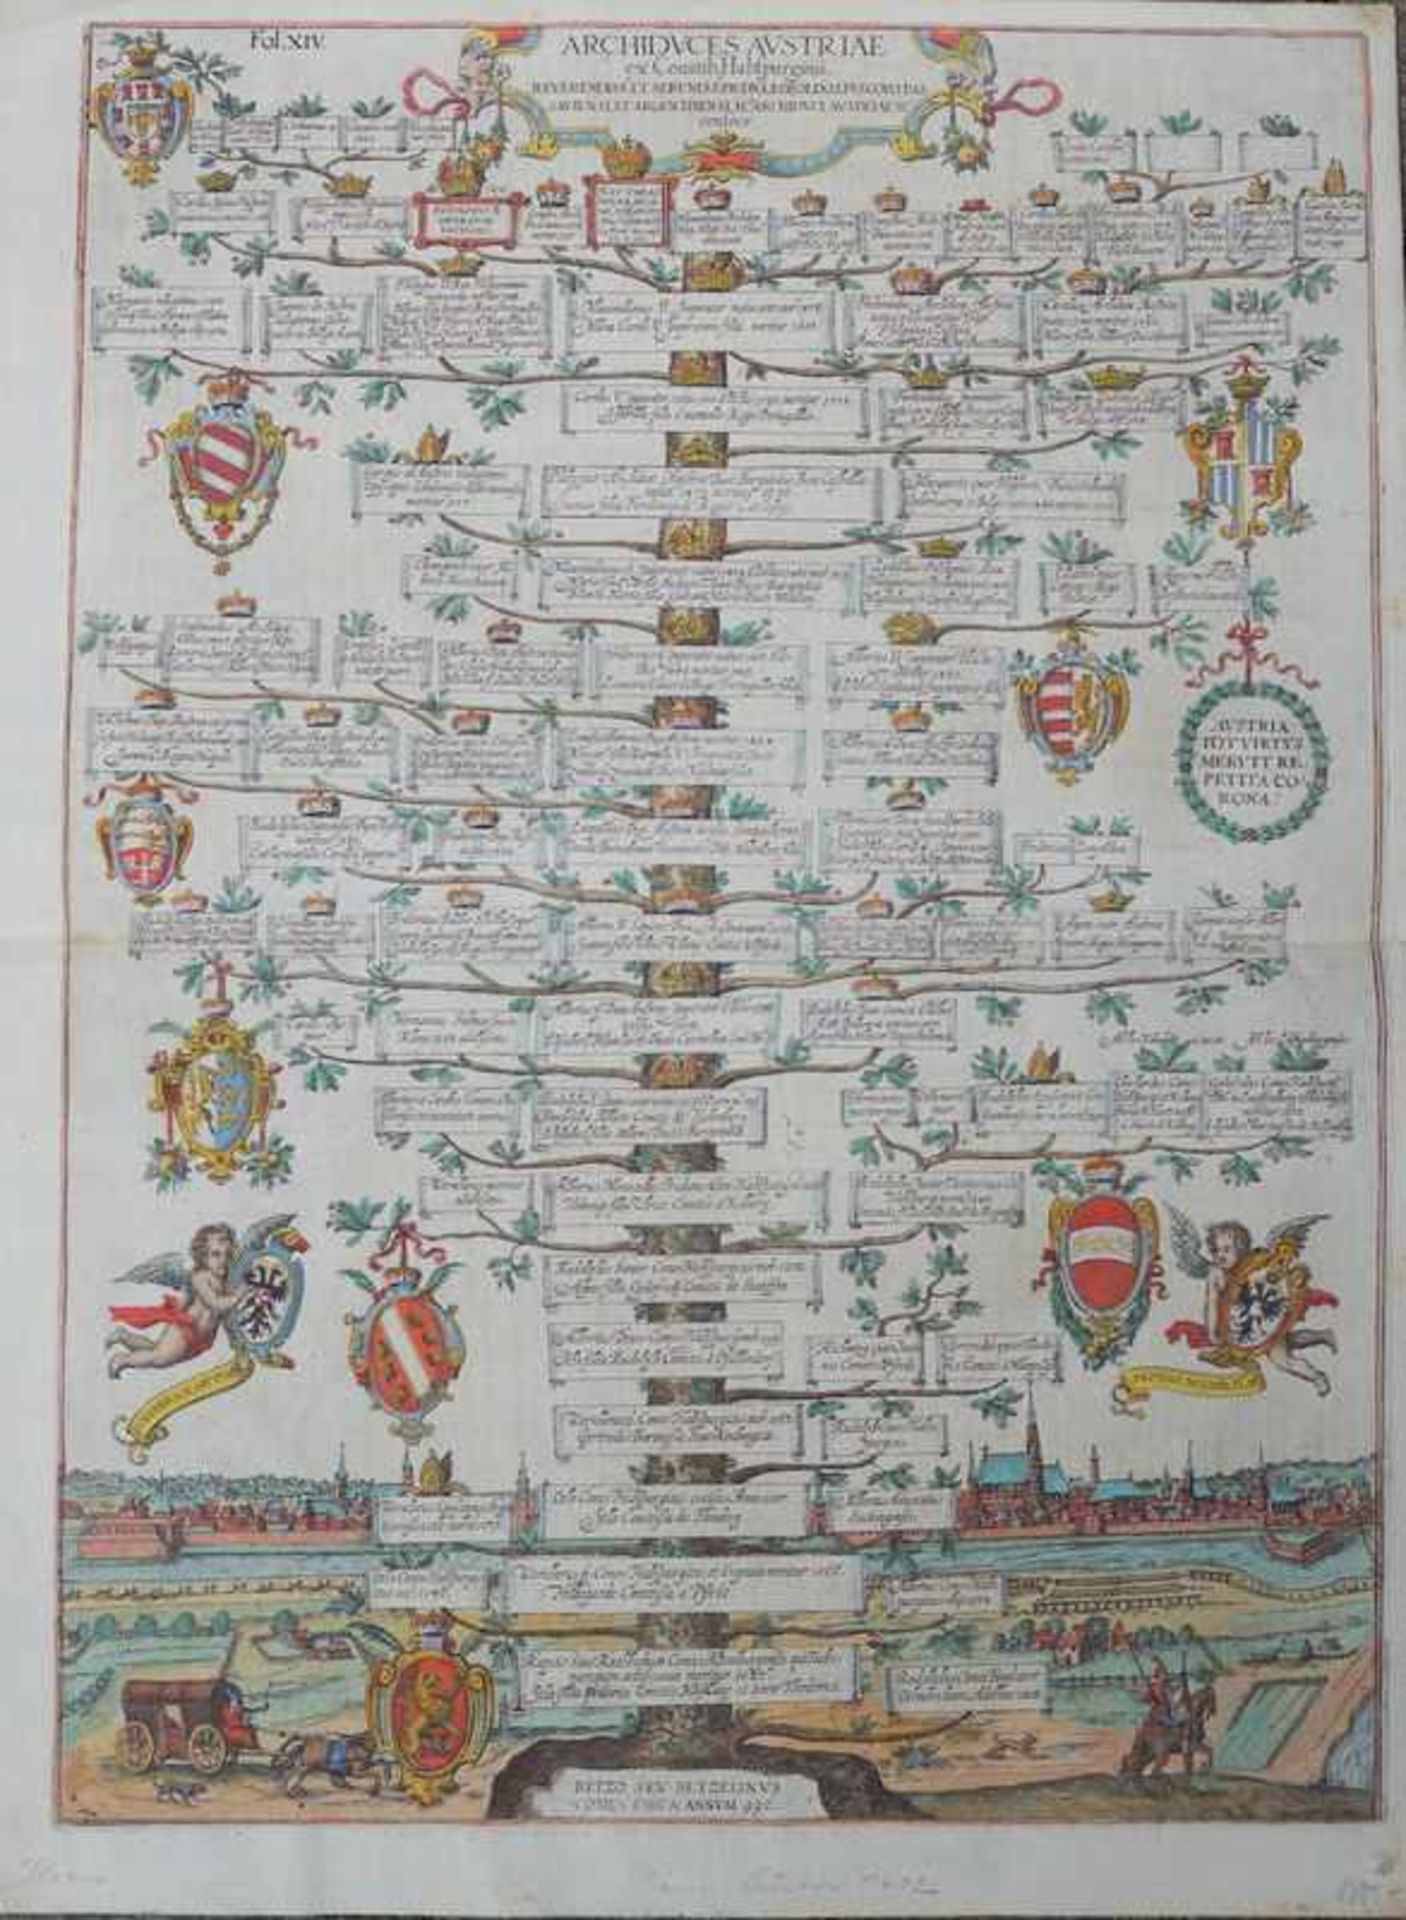 Stammbaum des Hauses Habsburg, Anf. 17.Jhd. Kupferstich auf Bütten altcoloriert, im Hintergrund